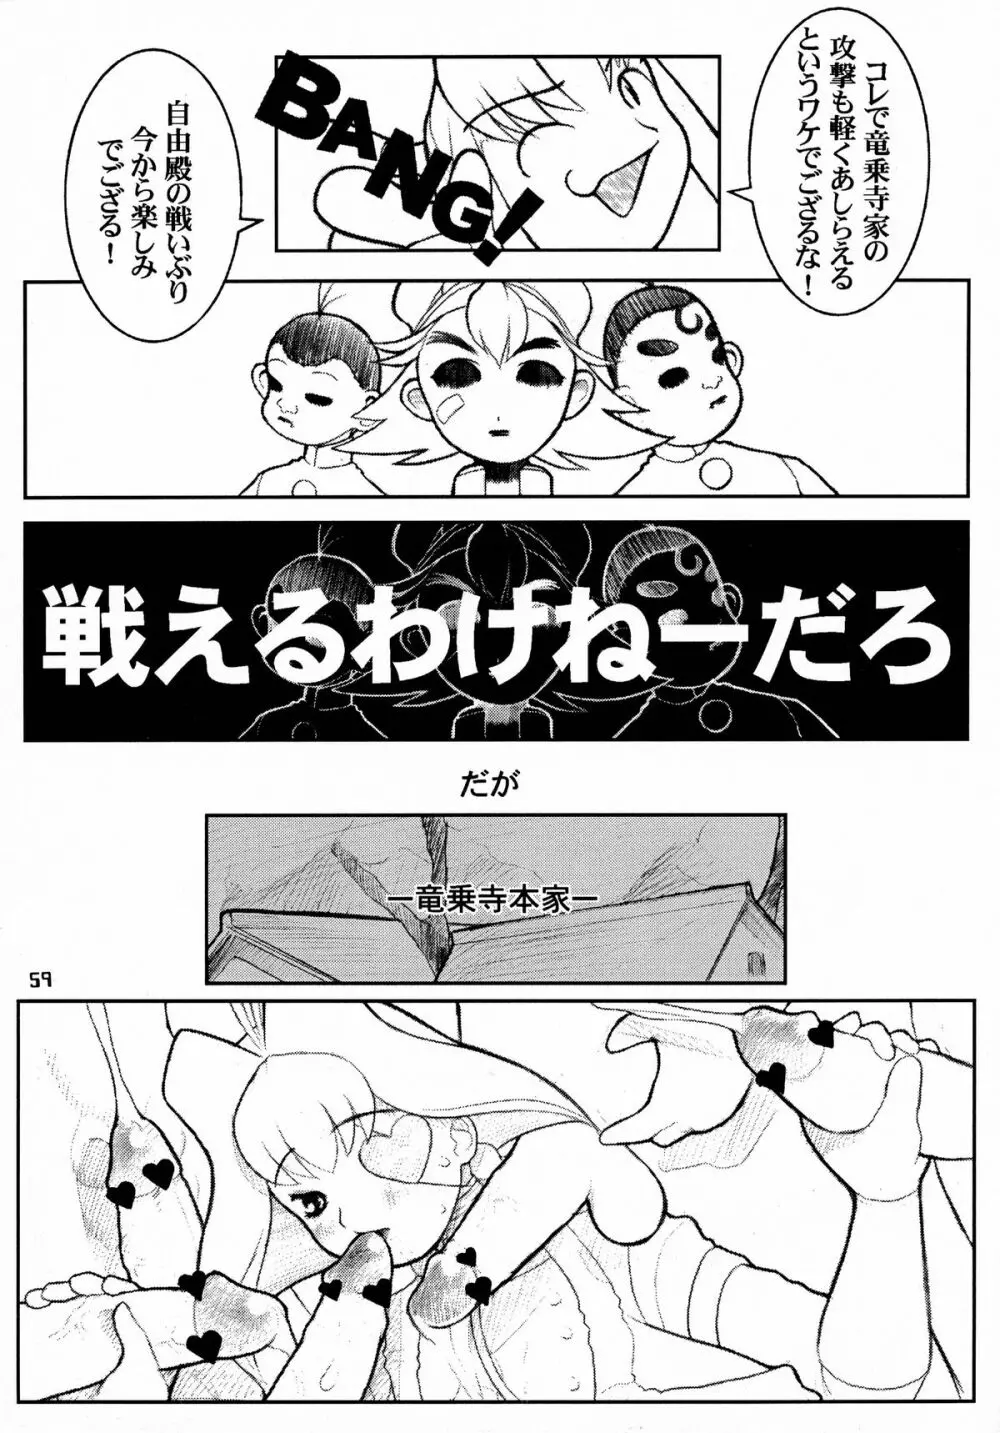 MaD ArtistS 十兵衛ちゃん 59ページ